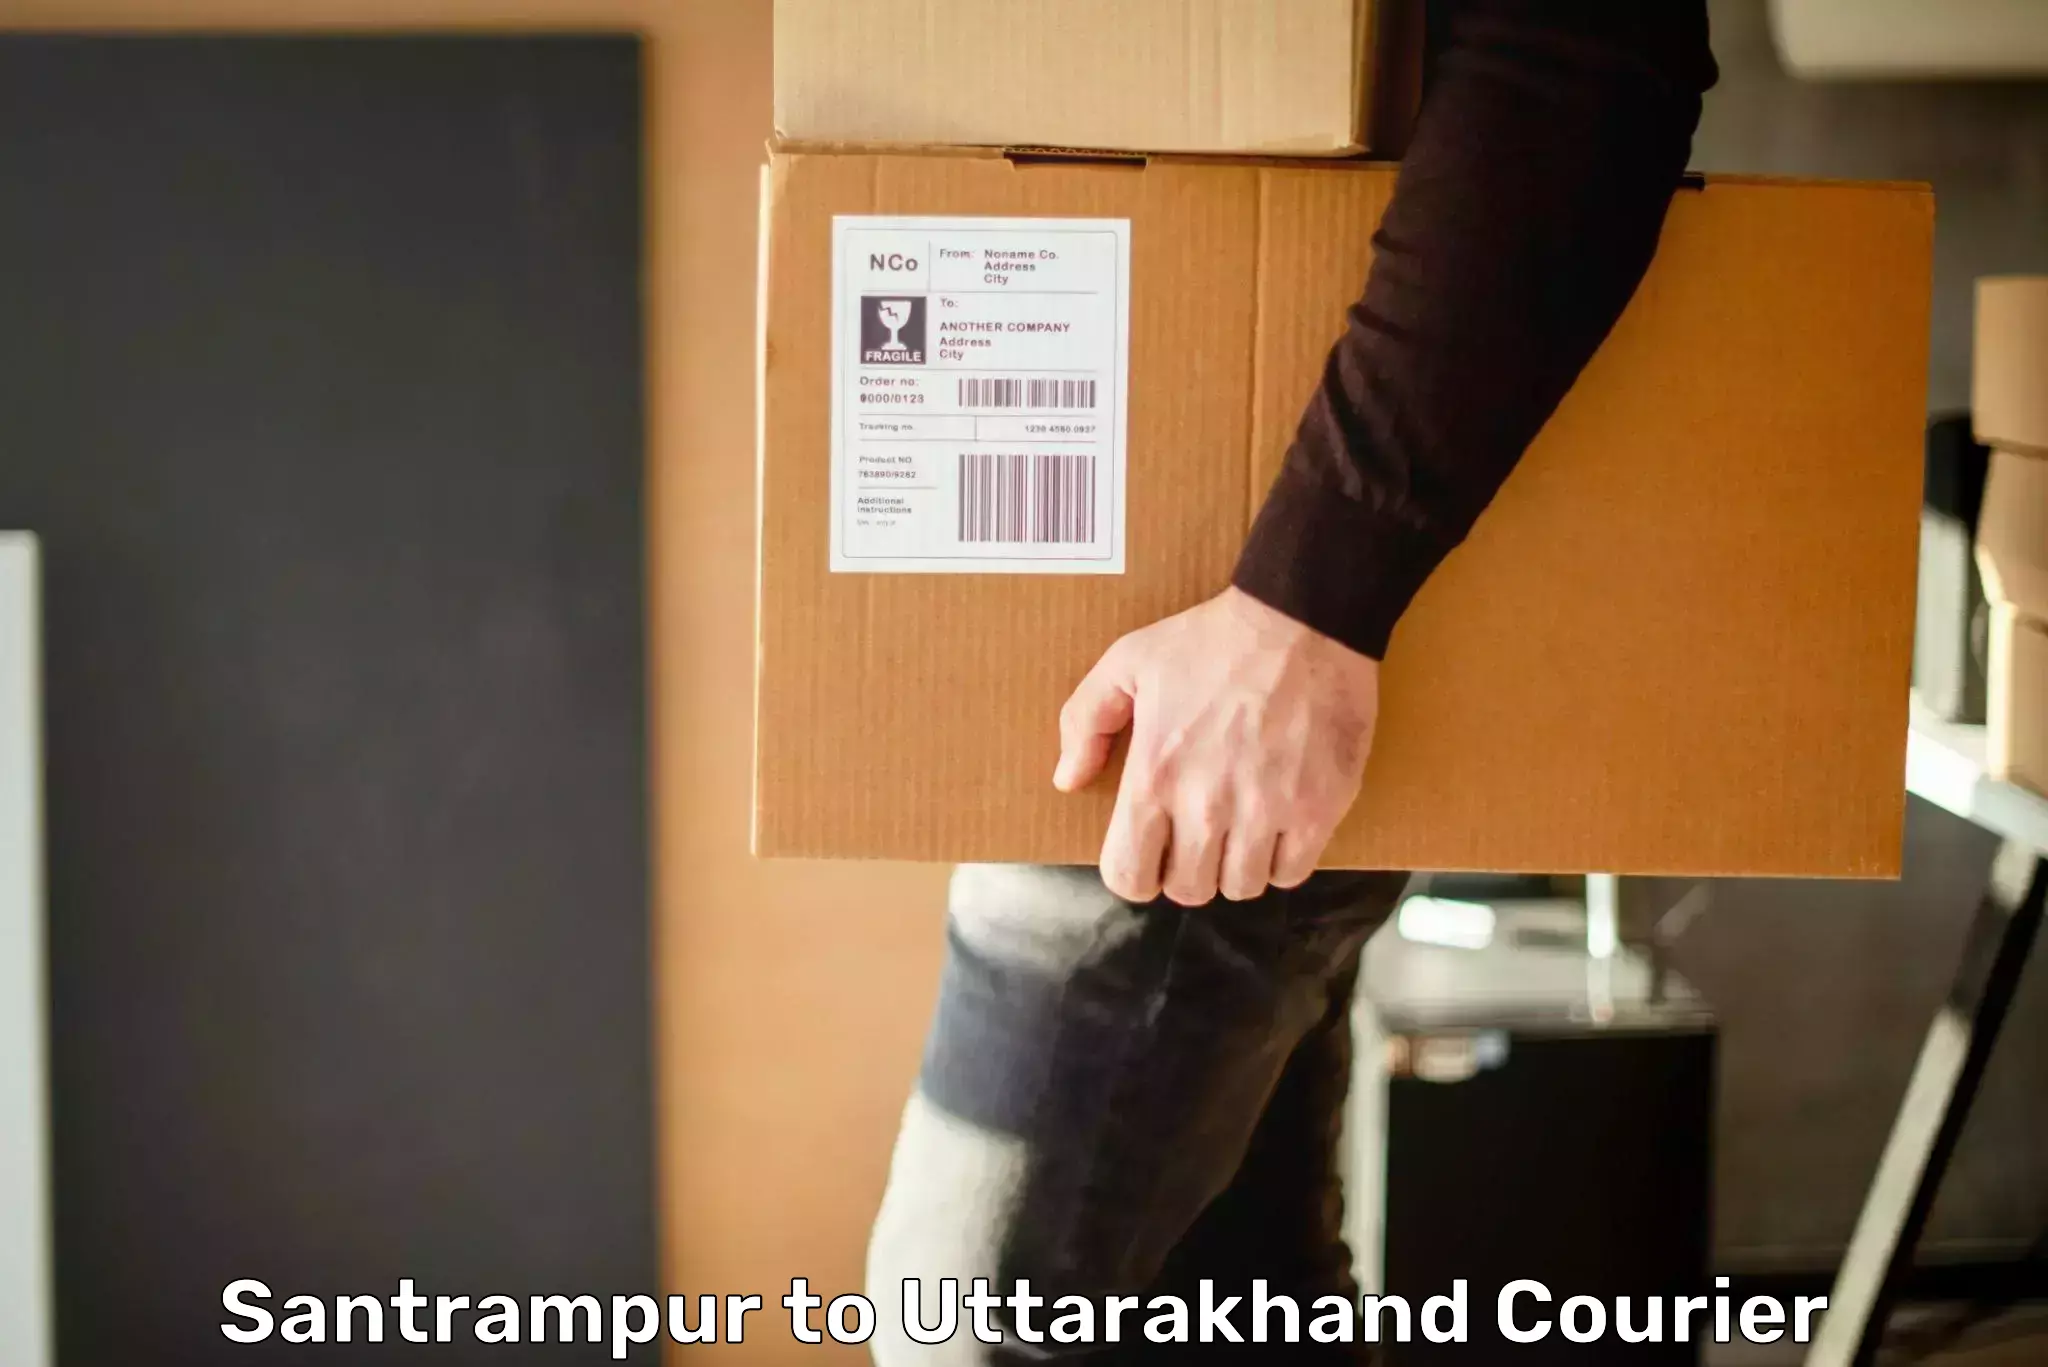 Courier service comparison Santrampur to Ranikhet